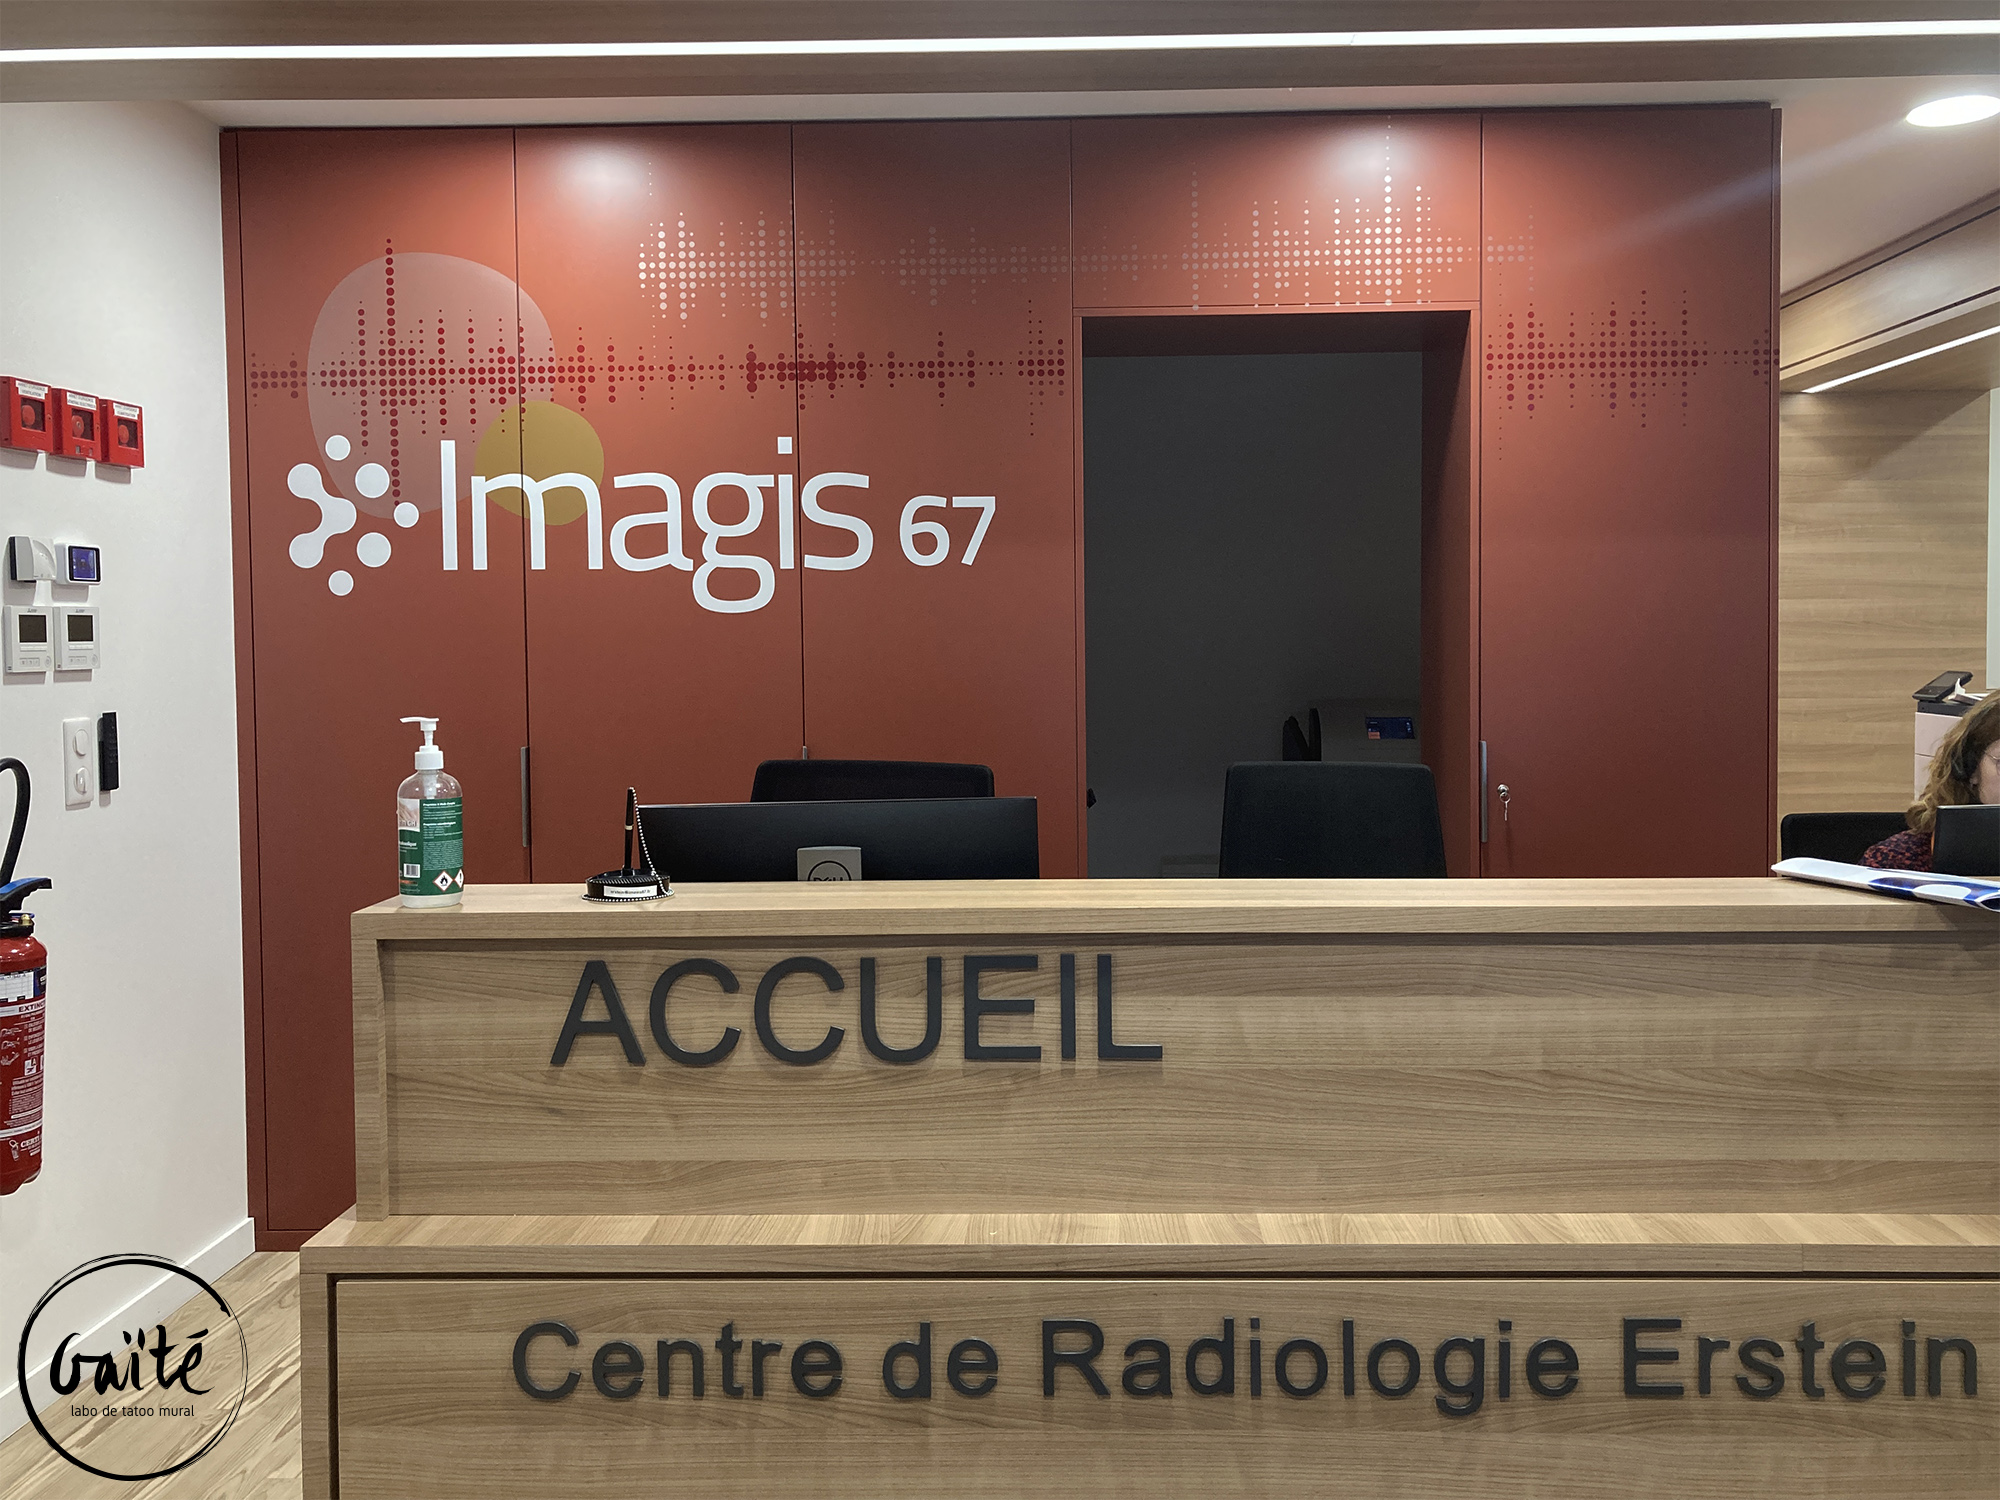 Imagis67 – Centre d’Imagerie Médicale et Radiologie – Erstein